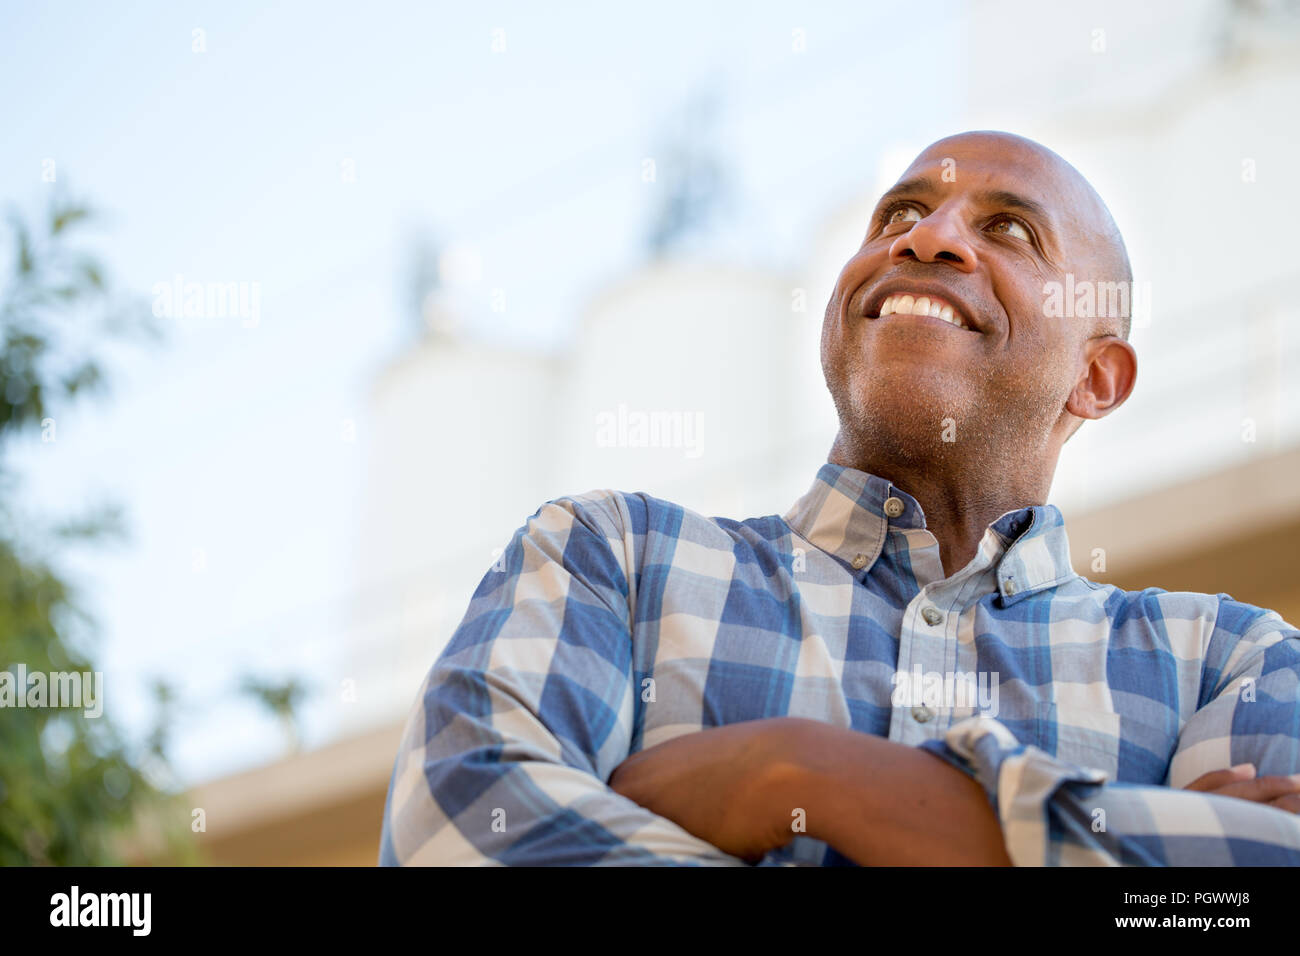 Gerne reife afrikanische amerikanische Mann lächelnd. Stockfoto